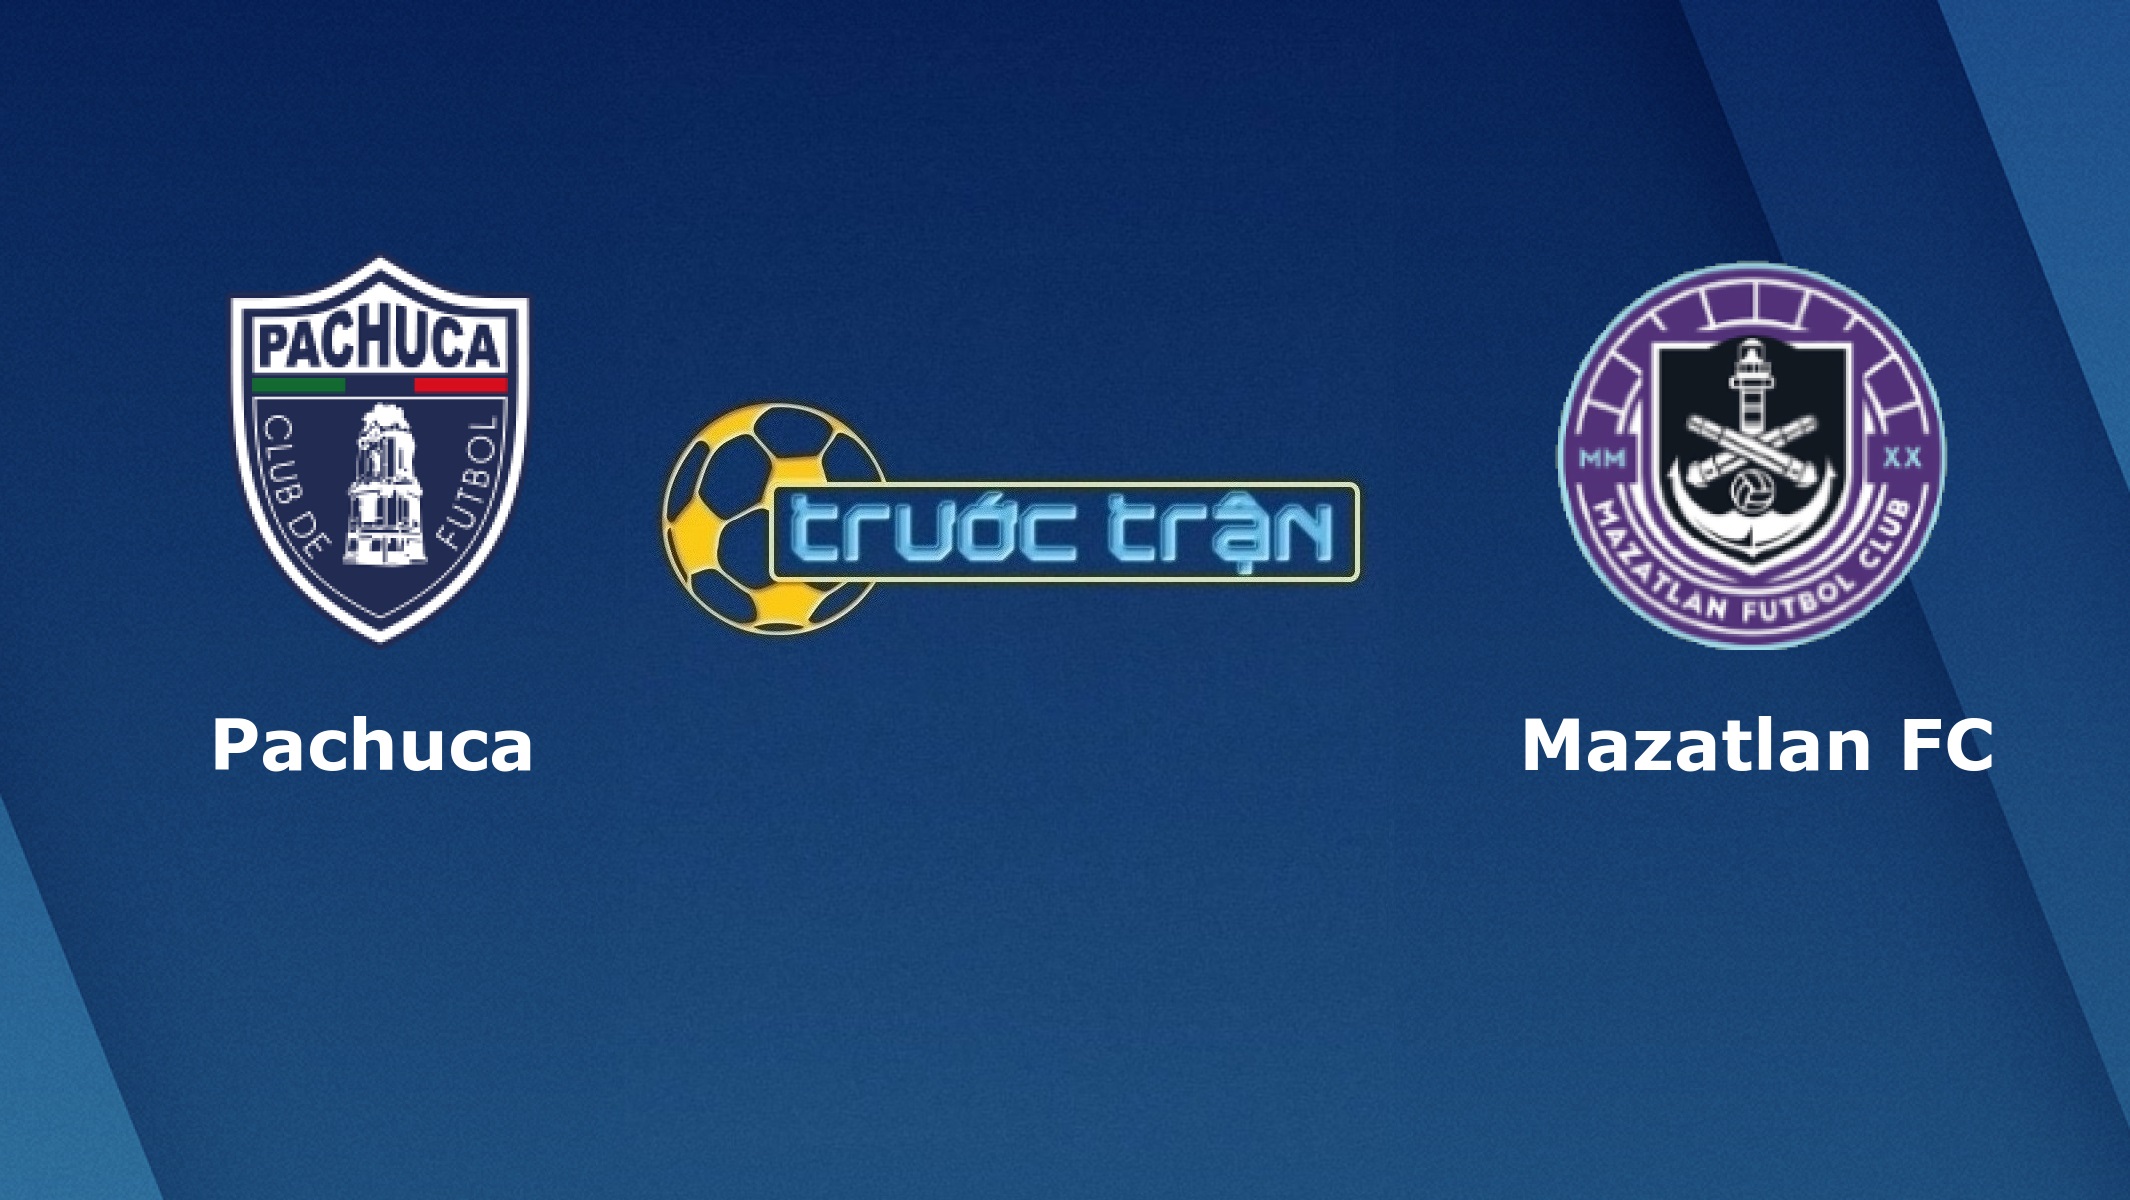 Pachuca vs Mazatlan FC – Tip kèo bóng đá hôm nay – 25/08